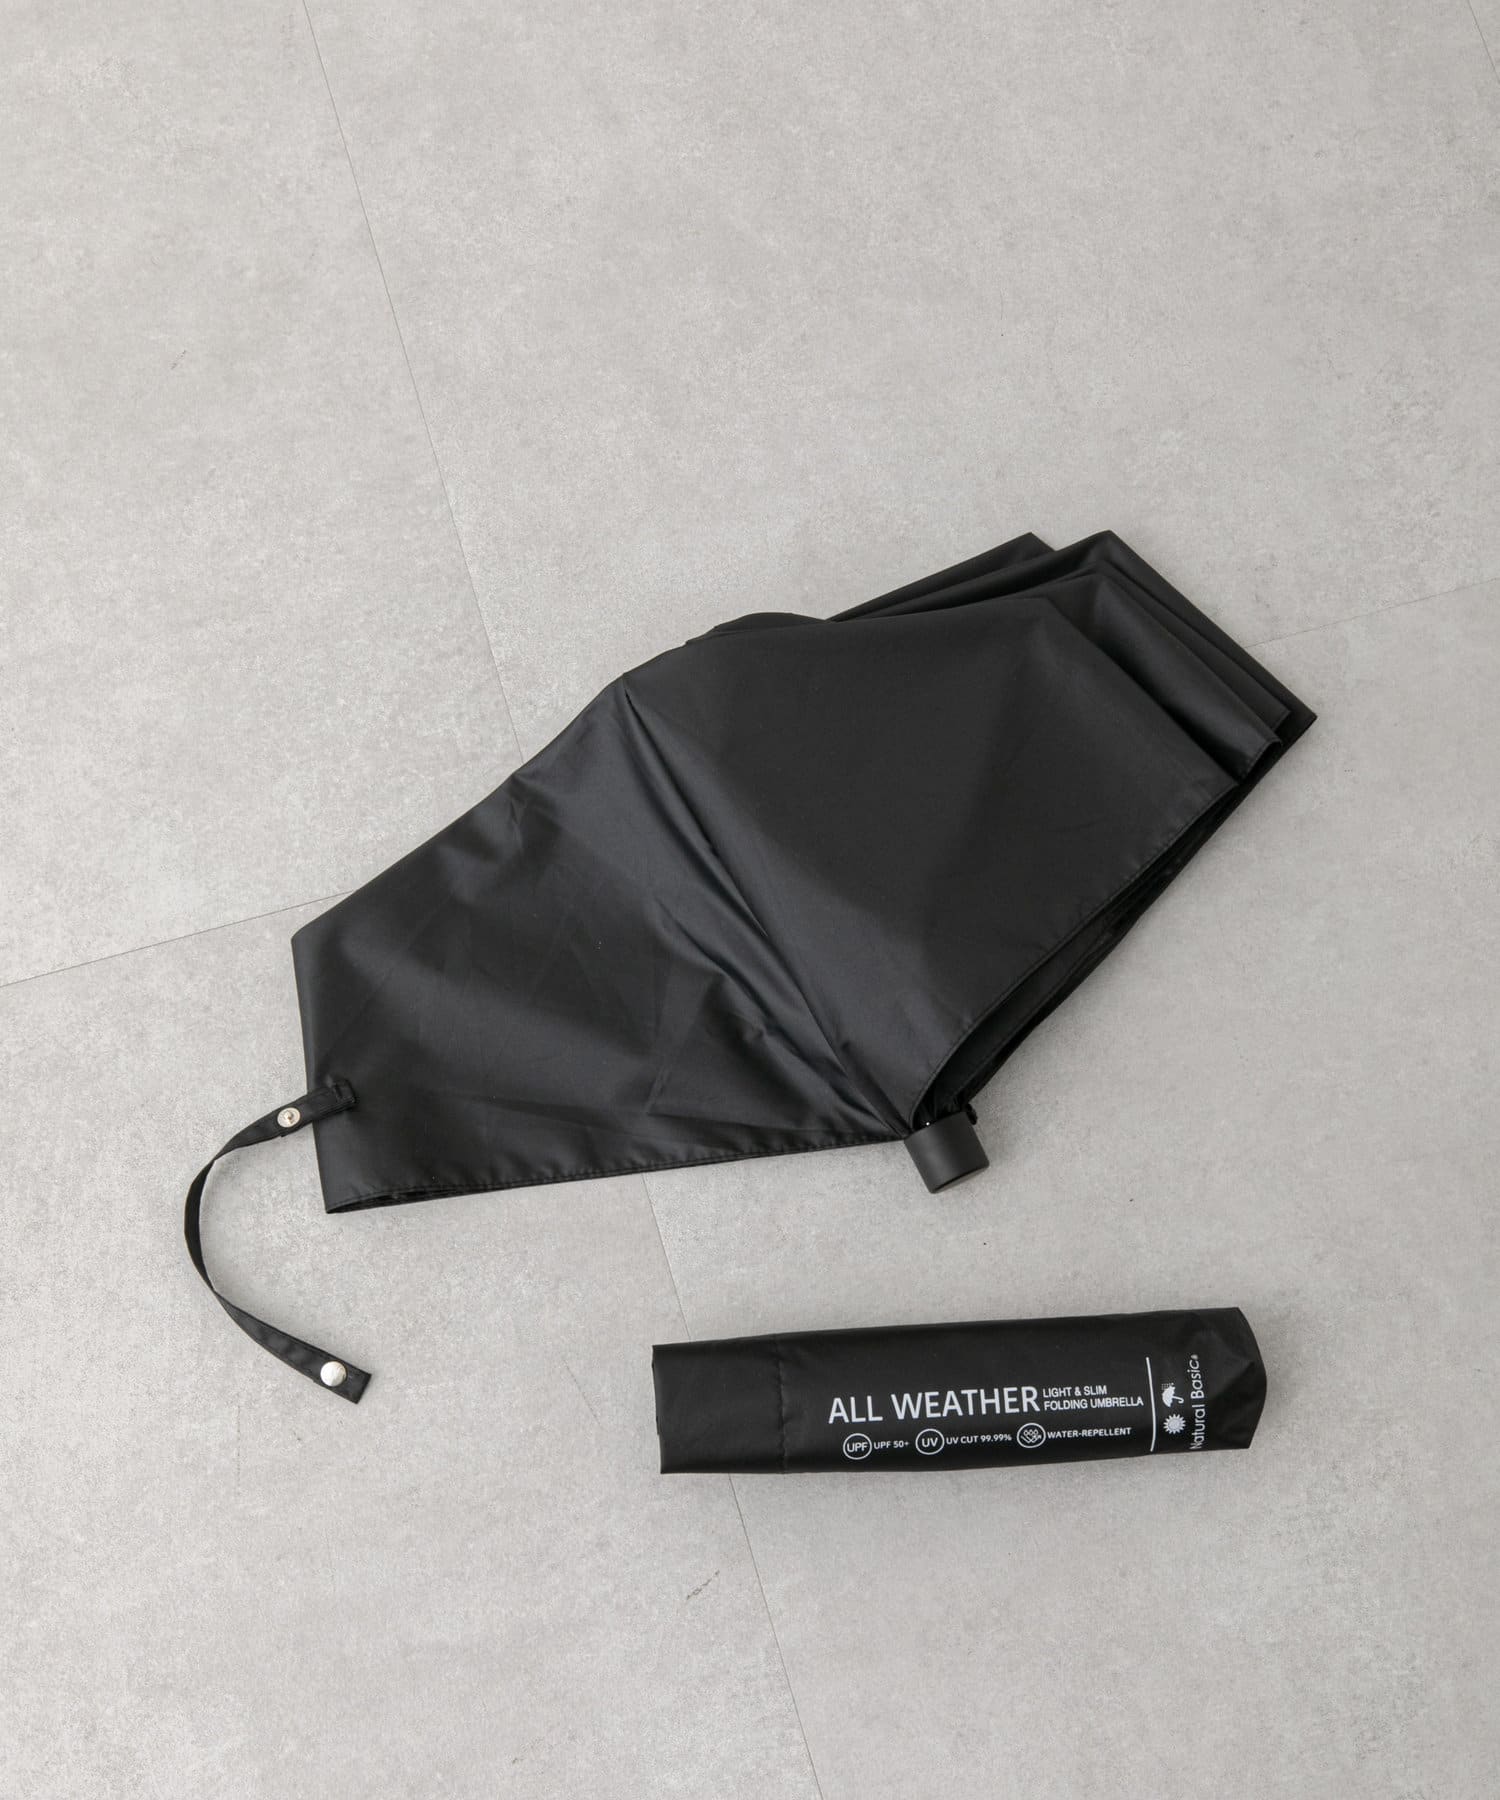 COLONY 2139(コロニー トゥーワンスリーナイン) UV/耐風 スリム折りたたみ傘